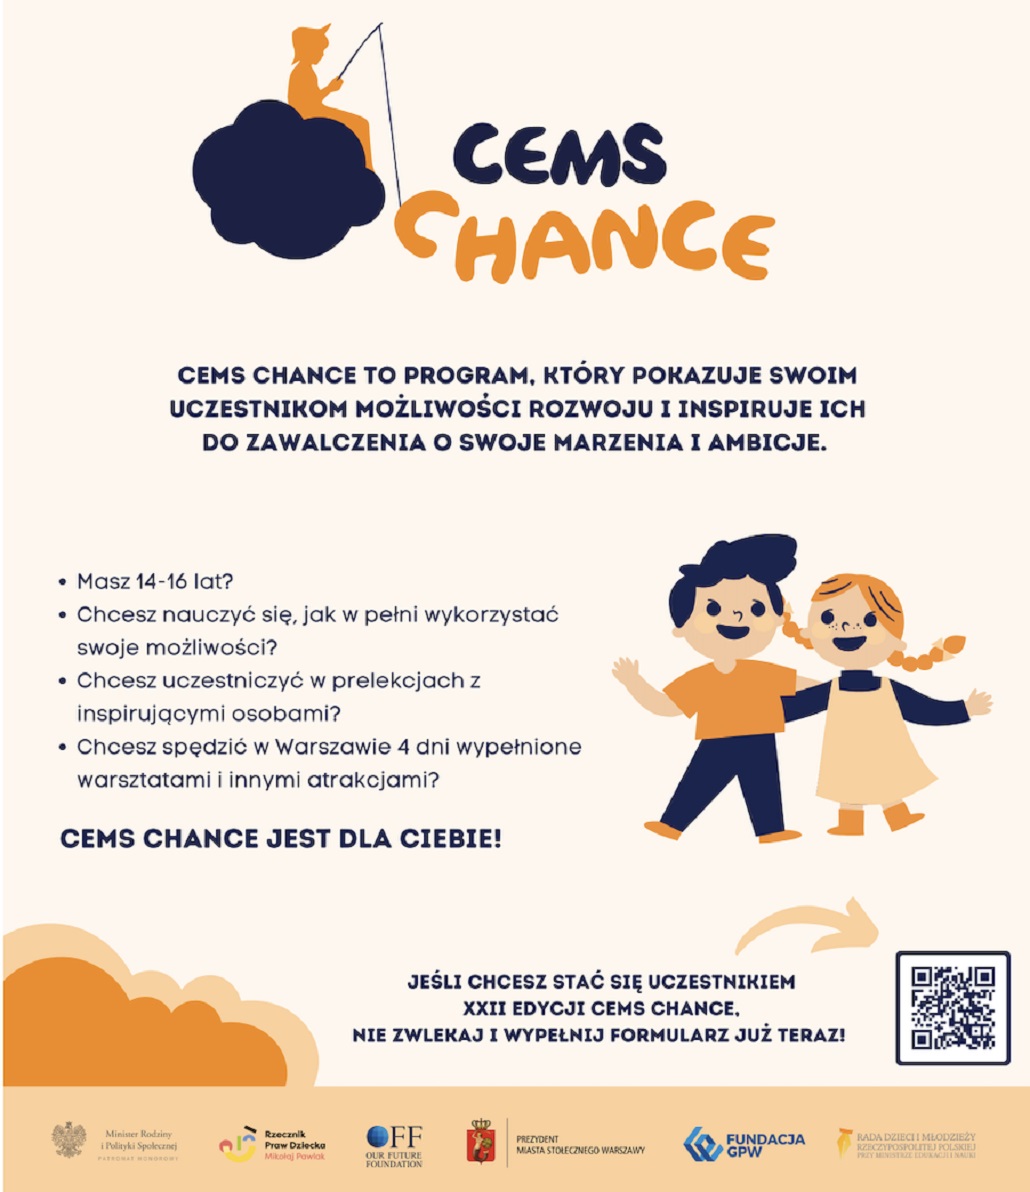 CEMS Chance XXII